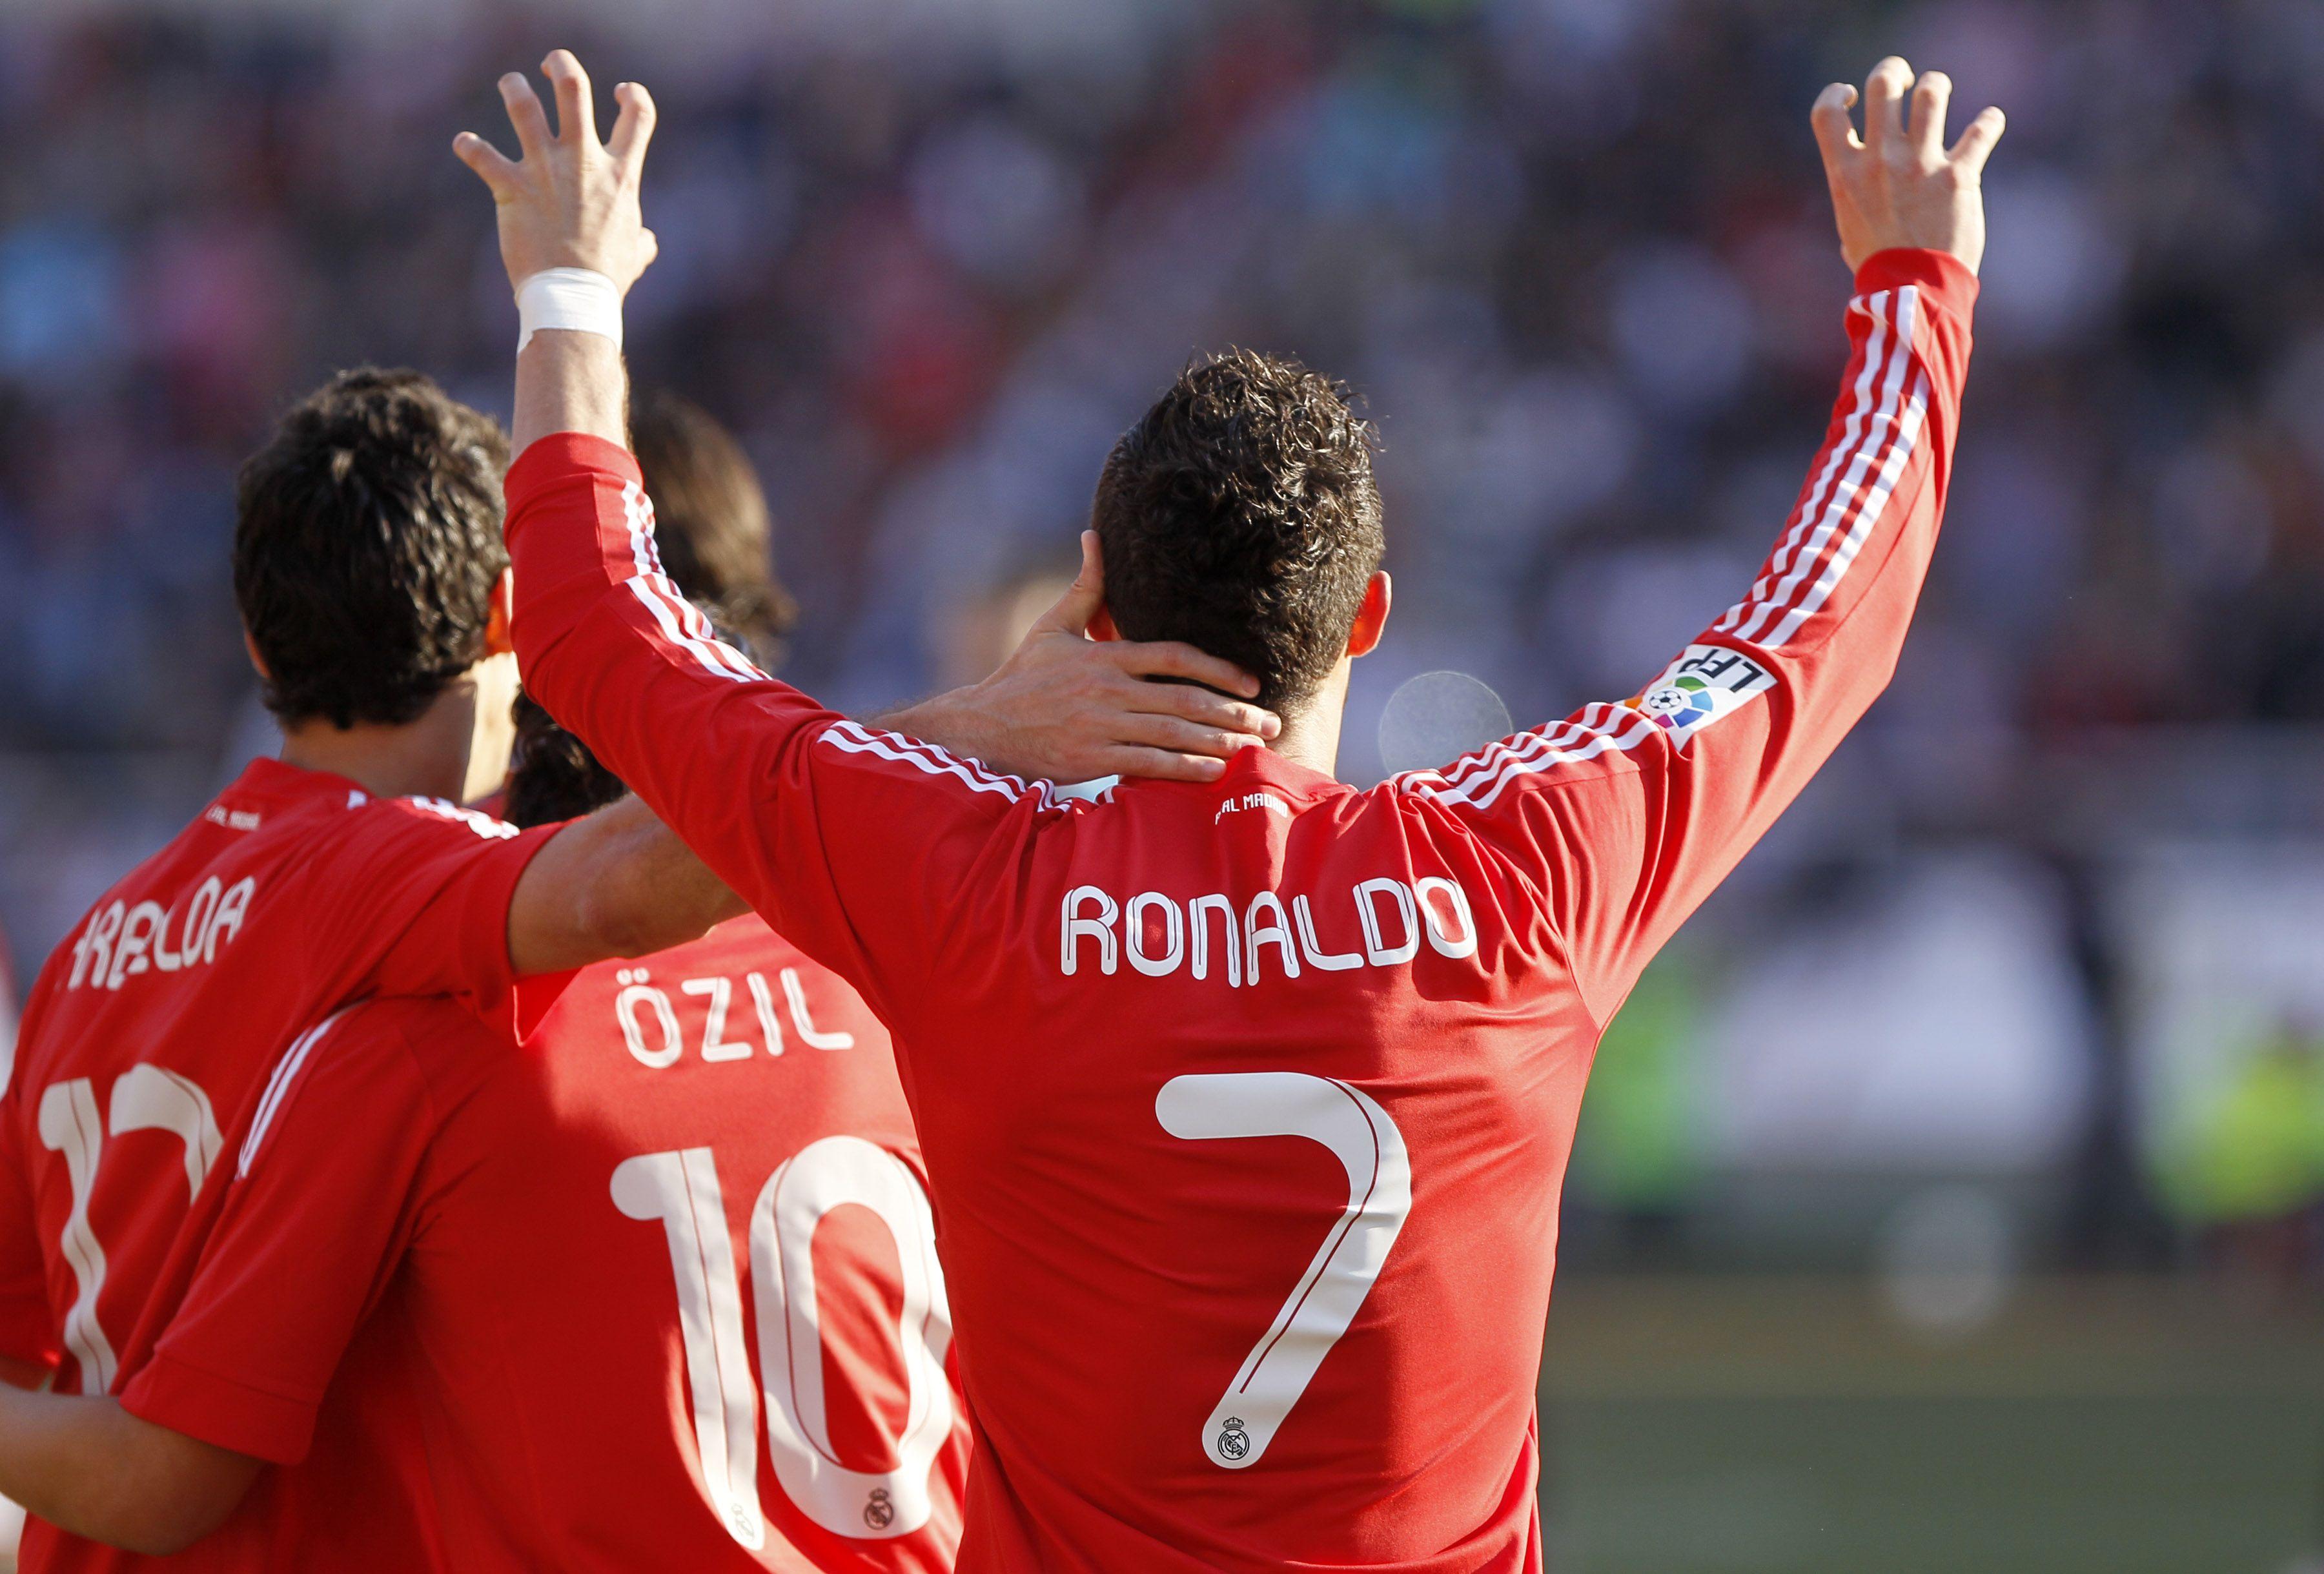 Ronaldo Backheel Keeps Real Points Clear In Spain Cnn